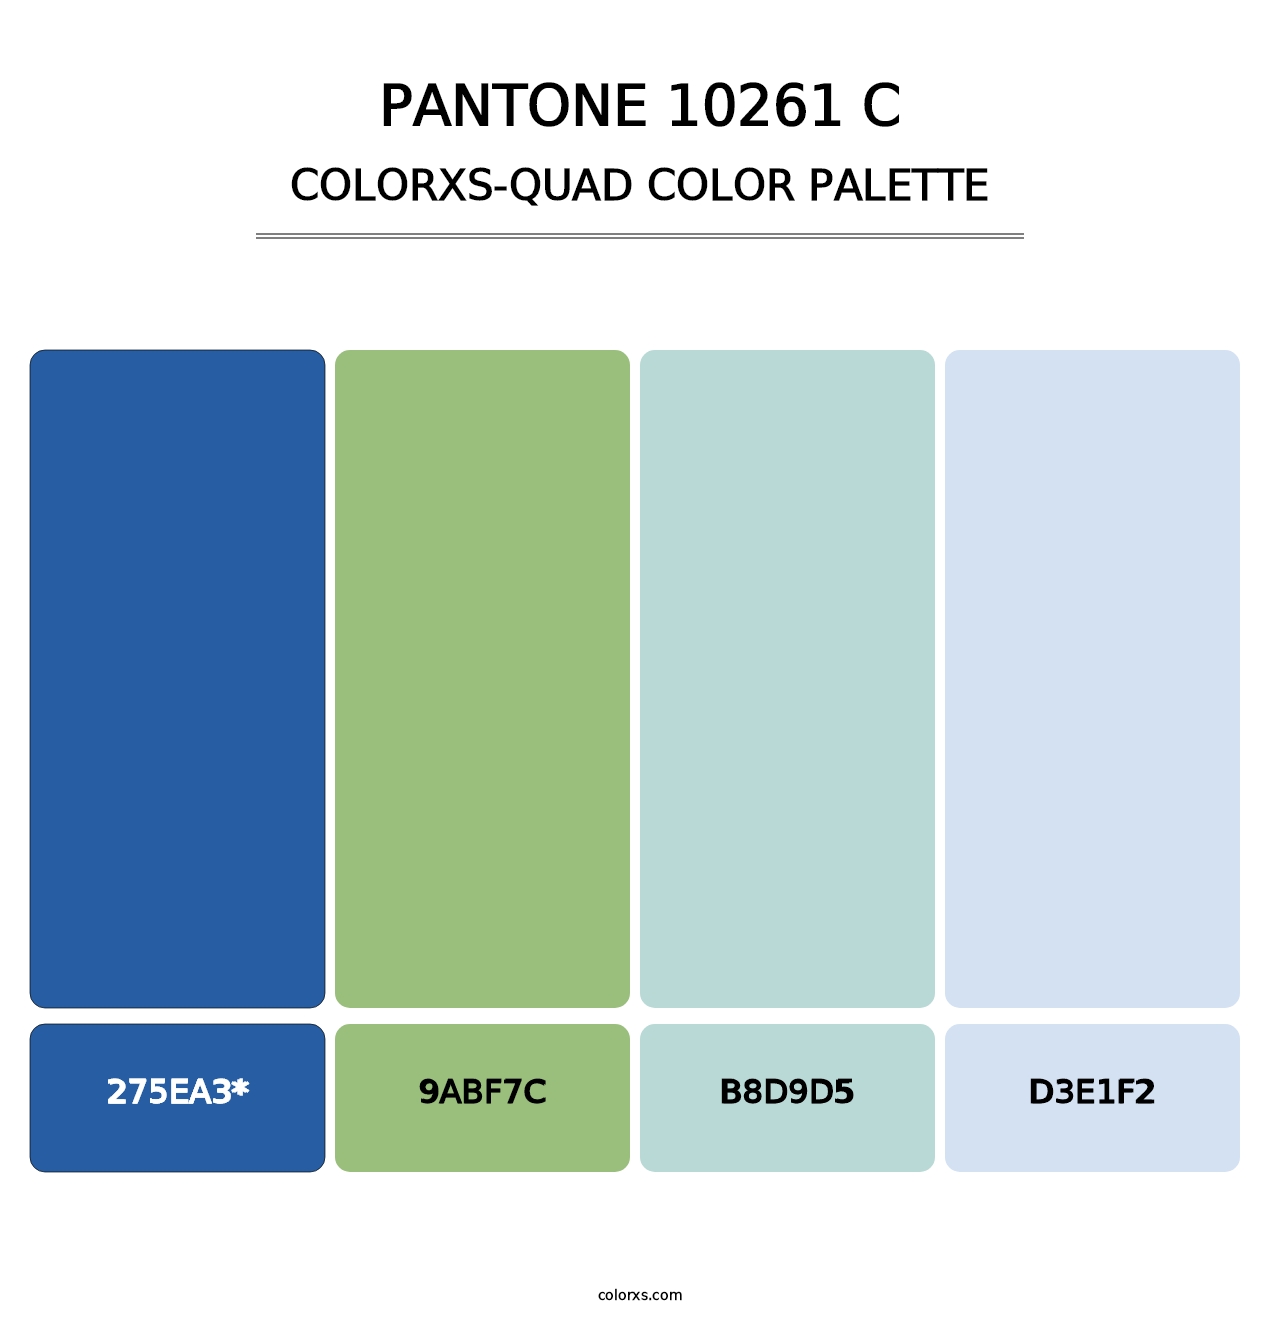 PANTONE 10261 C - Colorxs Quad Palette